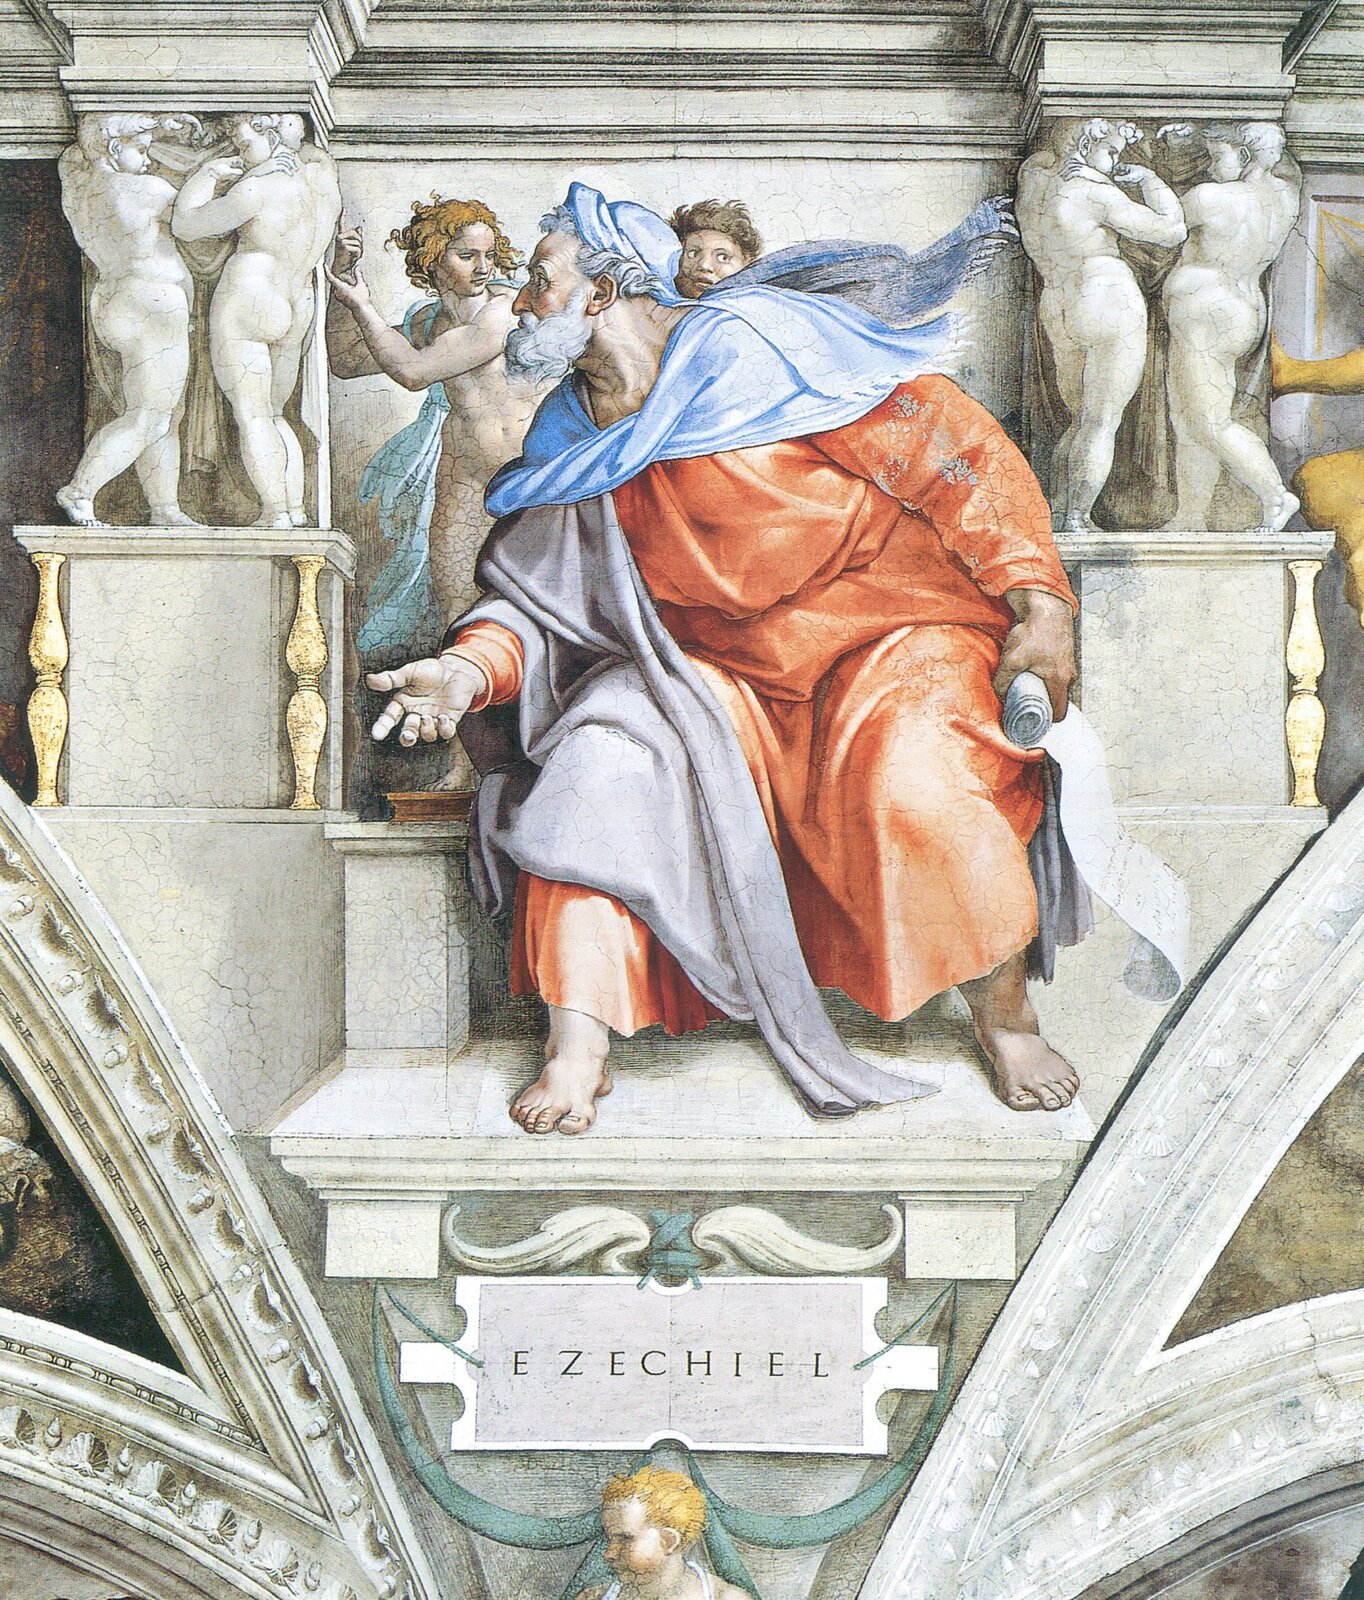 Ilustracja przedstawia fresk Michała Anioła Buonarottiego pt. „Ezechiel”. Na fresku znajduje się siedzący na tronie starzec. Mężczyzna ma długą siwą brodę, i jest ubrany w pomarańczowo-błękitną szatę. Głowę ma zwróconą w bok, w jednej ręce trzyma zwój. Za mężczyzną widoczne są dwie postaci.